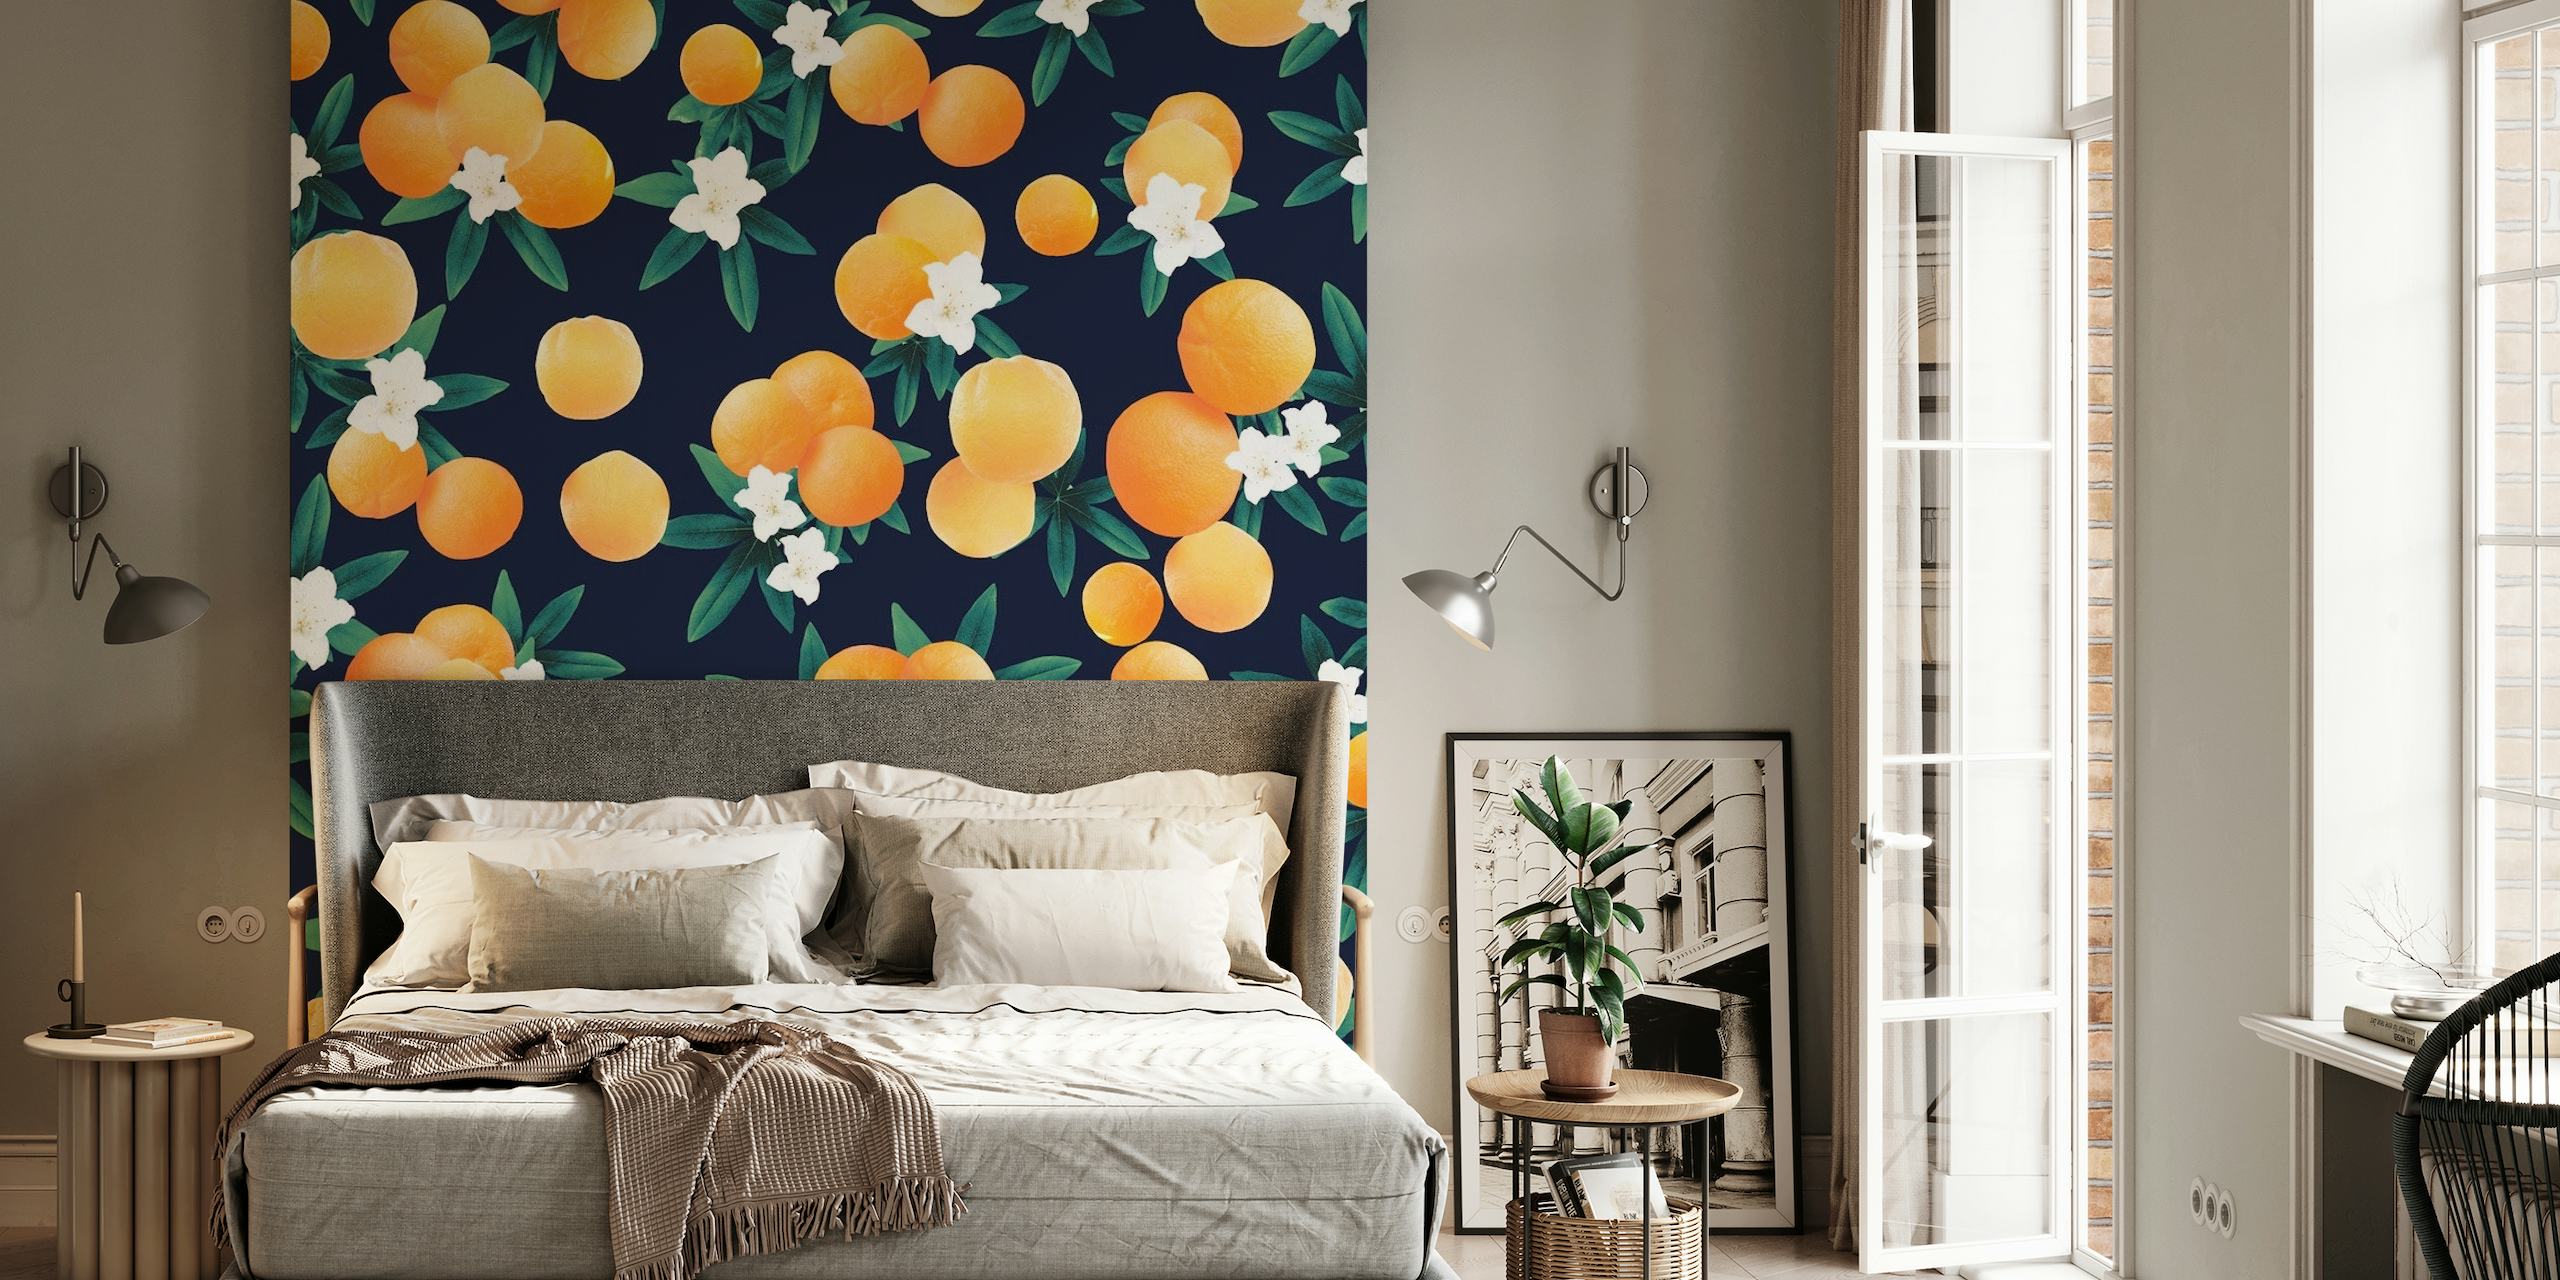 Fototapeta s jasně oranžovými citrusovými plody a bílými květy na tmavě modrém pozadí.